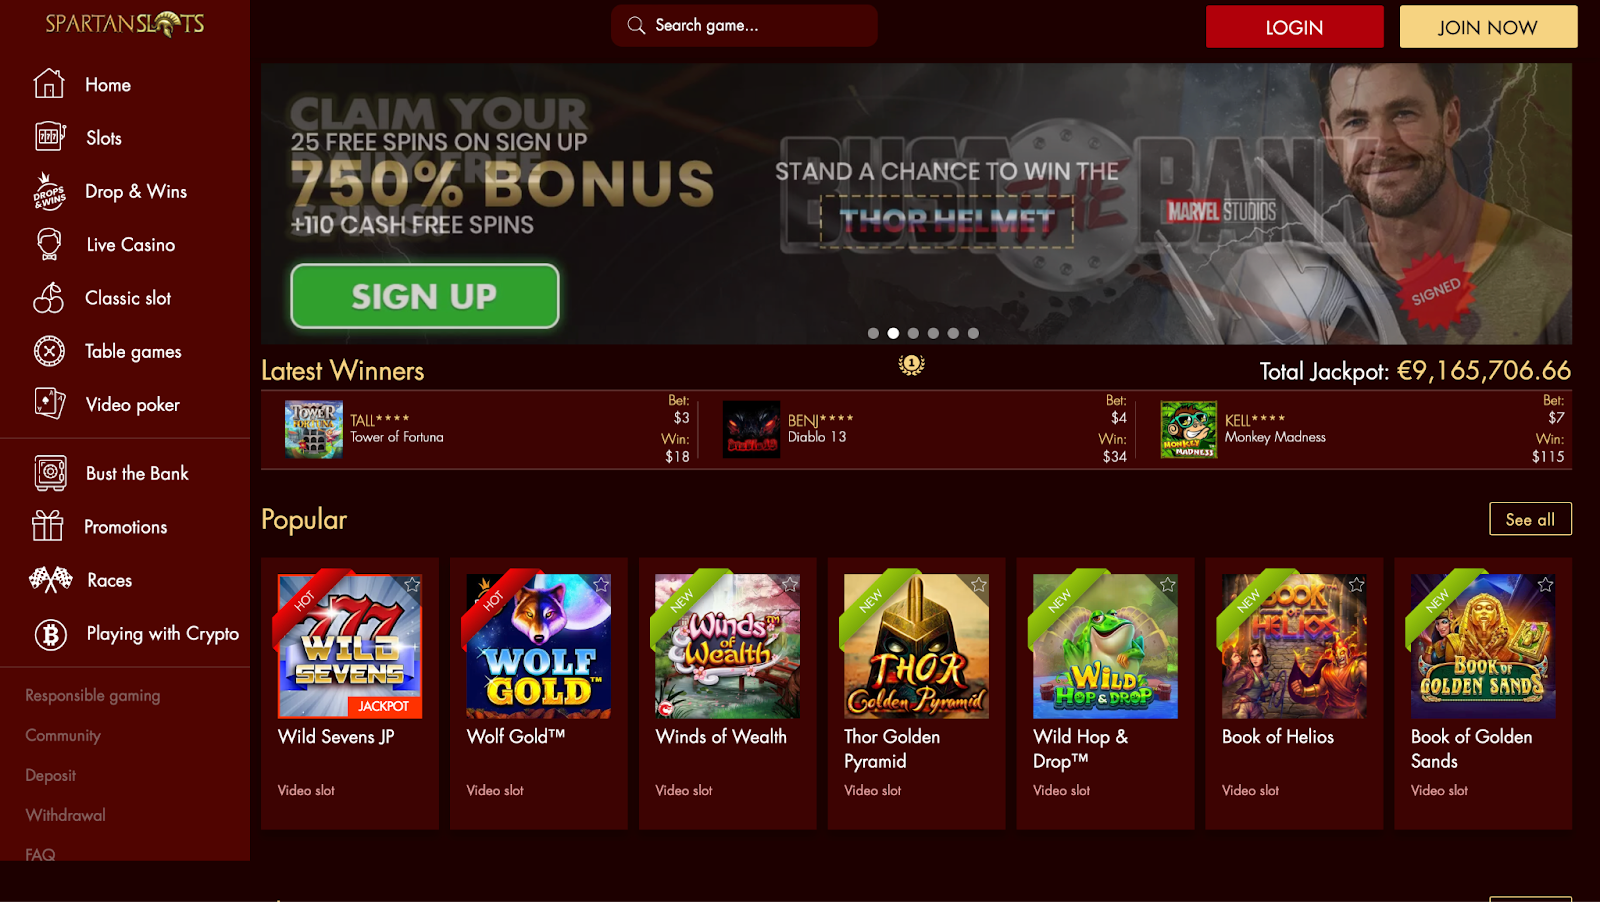 Spartan Slots Casino Website